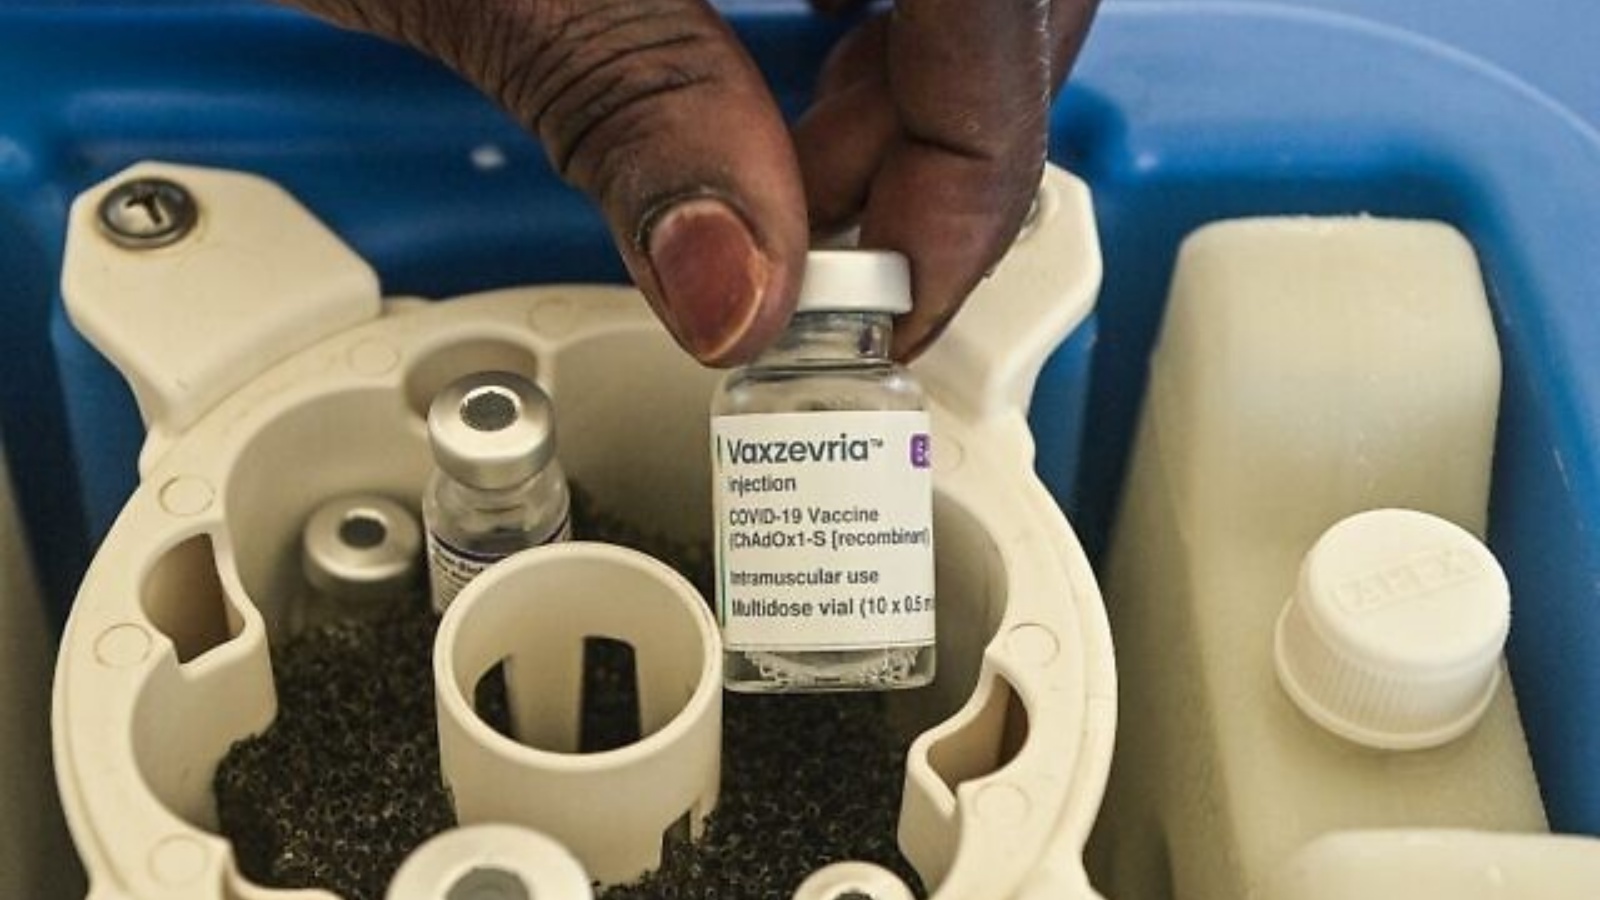 عامل رعاية صحية يحضر جرعة من لقاح كوفيد 19 أسترازينيكا، خلال تطعيم جماعي في نيروبي، في 16 كانون الأول/ديسمبر 2021.